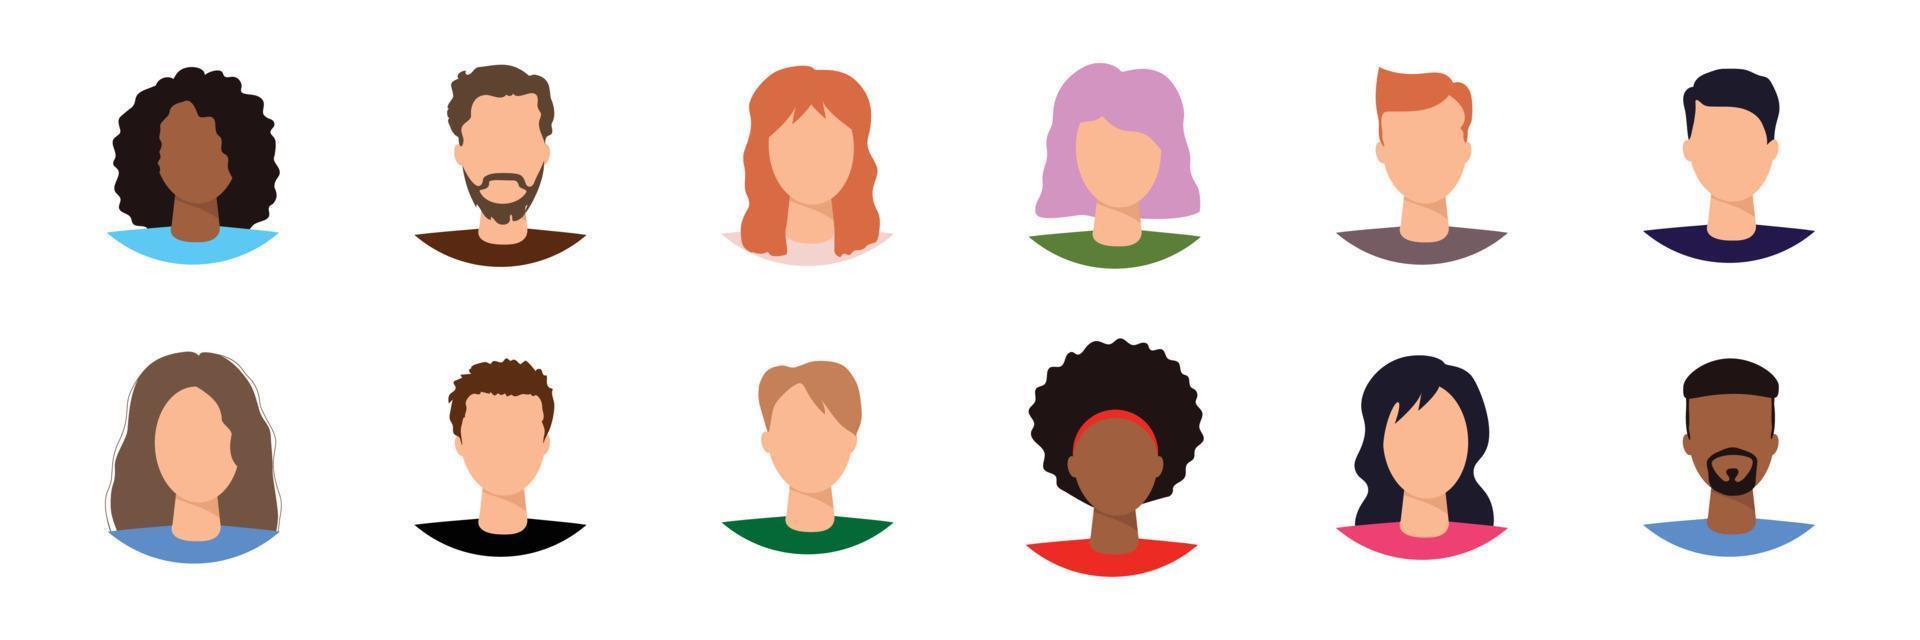 avatars de visages masculins et féminins. ensemble d'icônes vectorielles de style plat vecteur